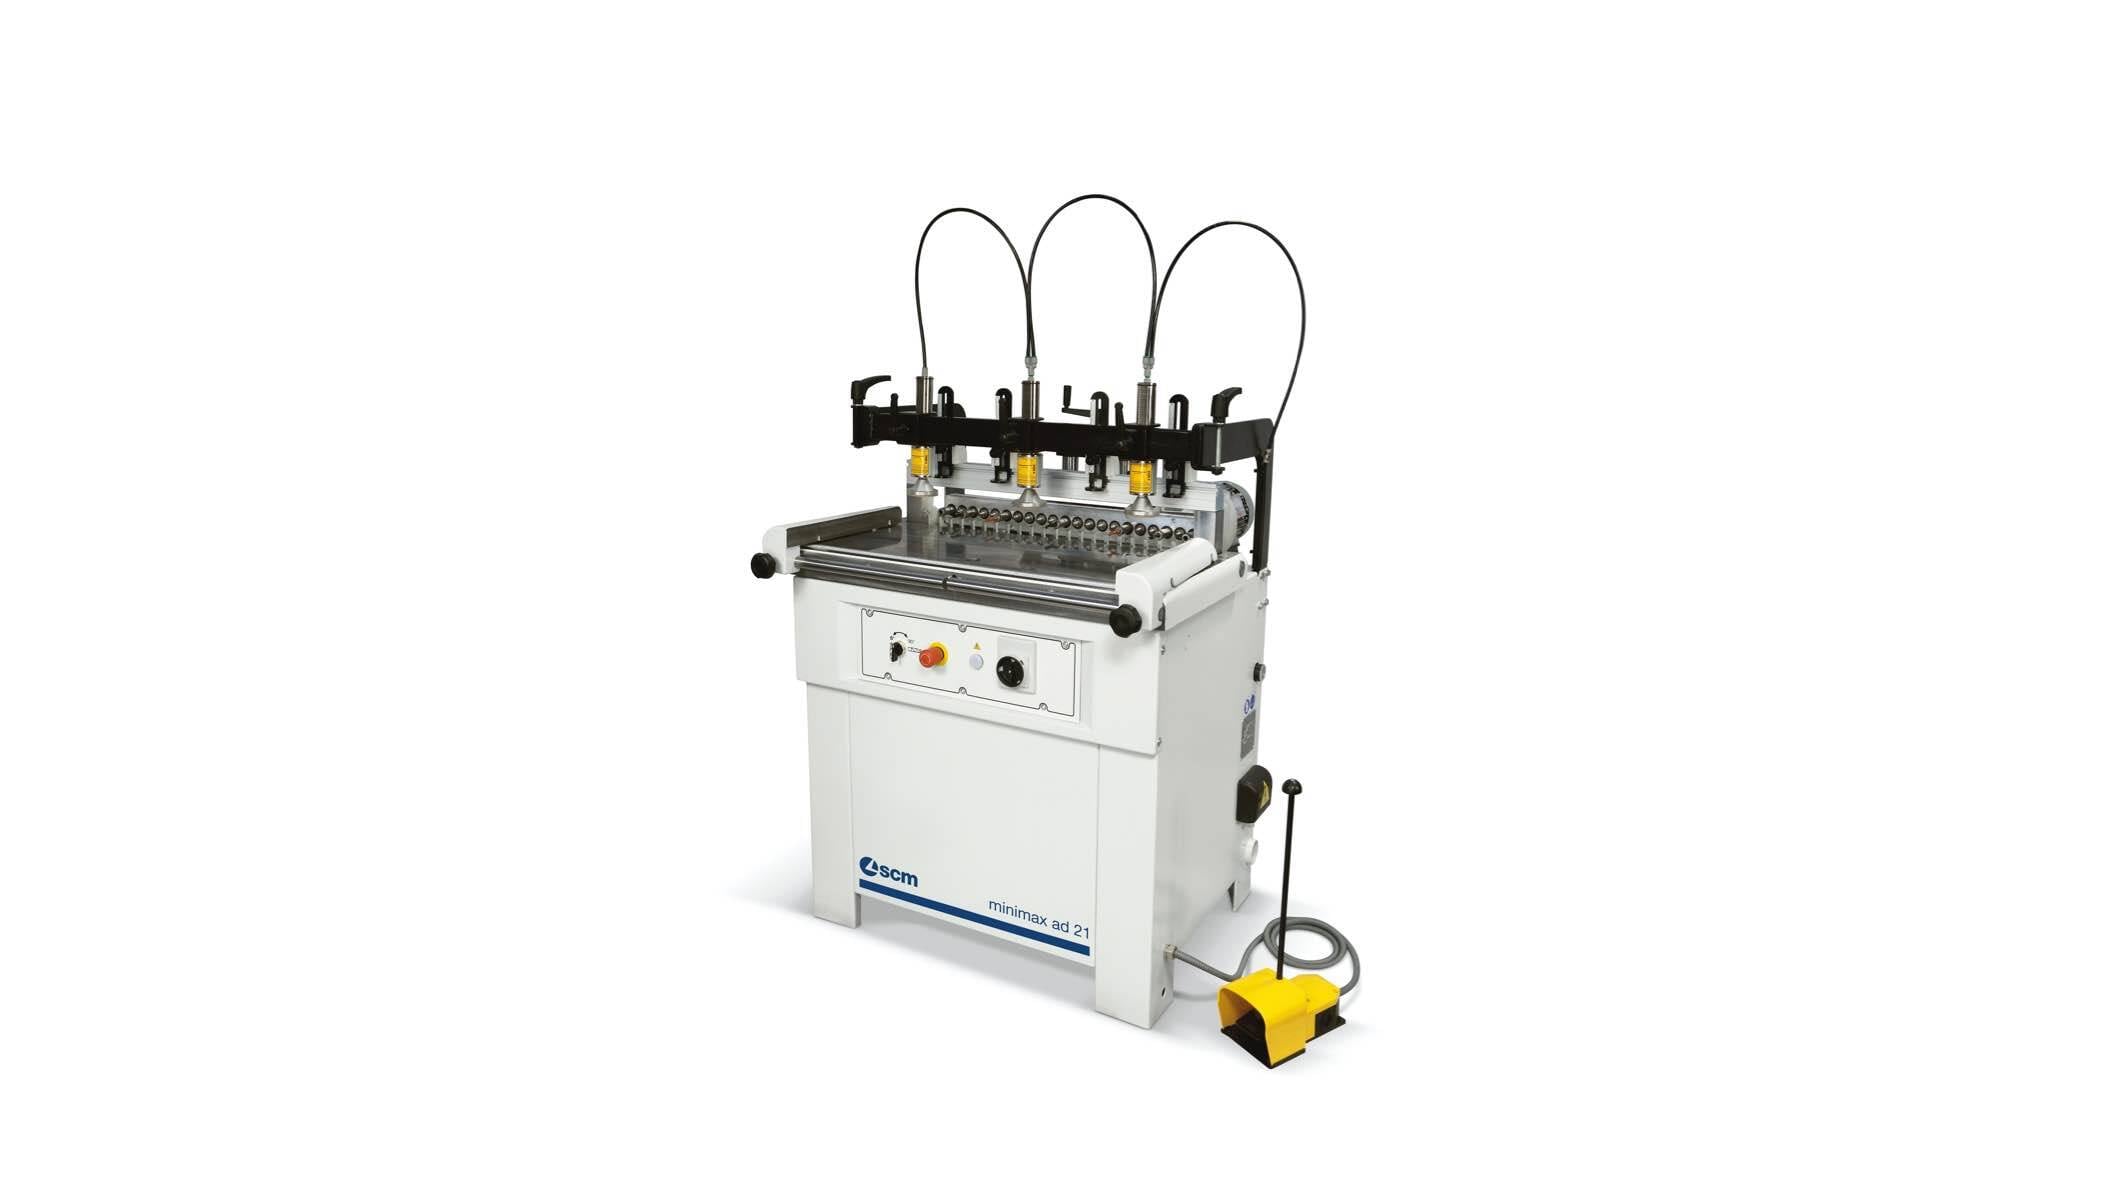 Tischlereimaschinen - Reihenlochbohrmaschine - minimax ad 21